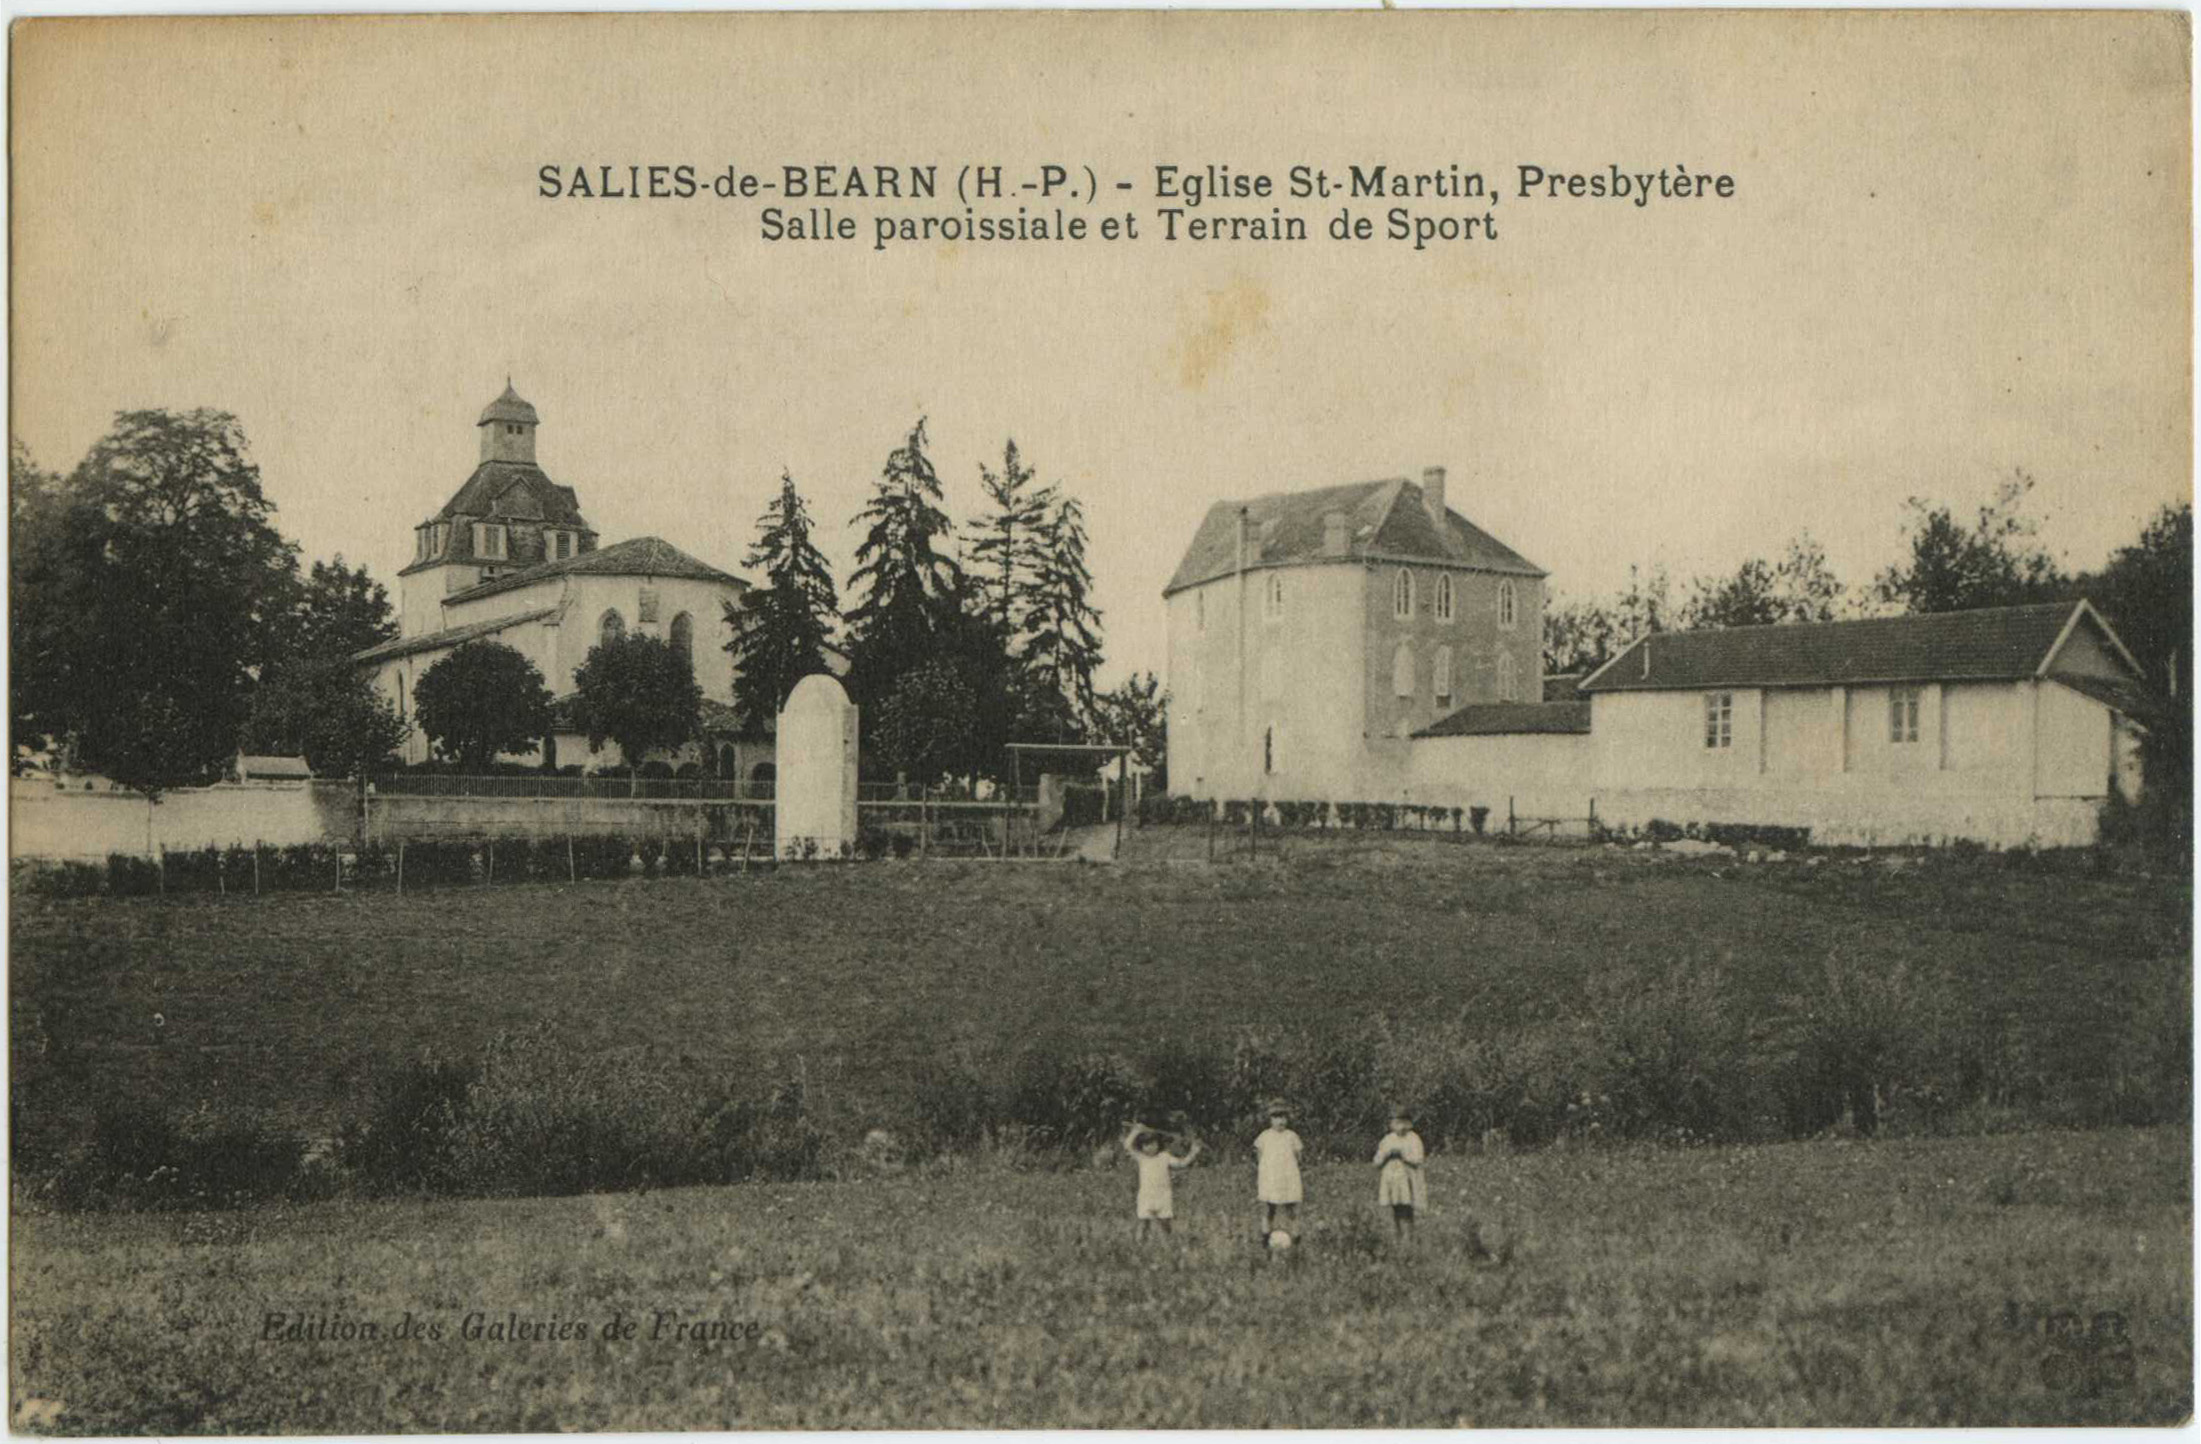 Salies-de-Béarn - Eglise St-Martin, Presbytère - Salle paroissiale et Terrain de Sport